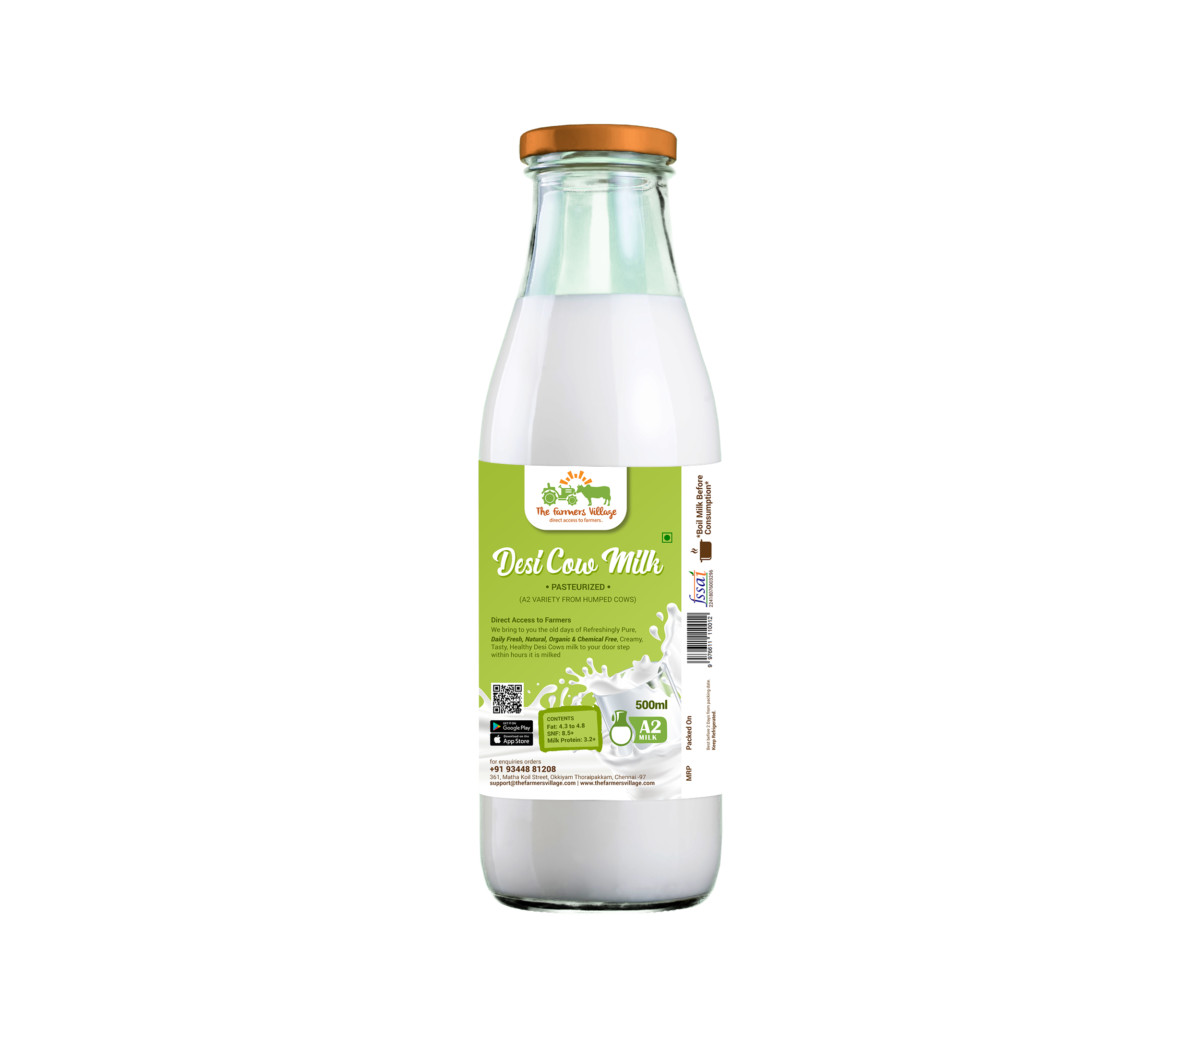 Desi Buffalo Milk Pasteurized A2 Milk